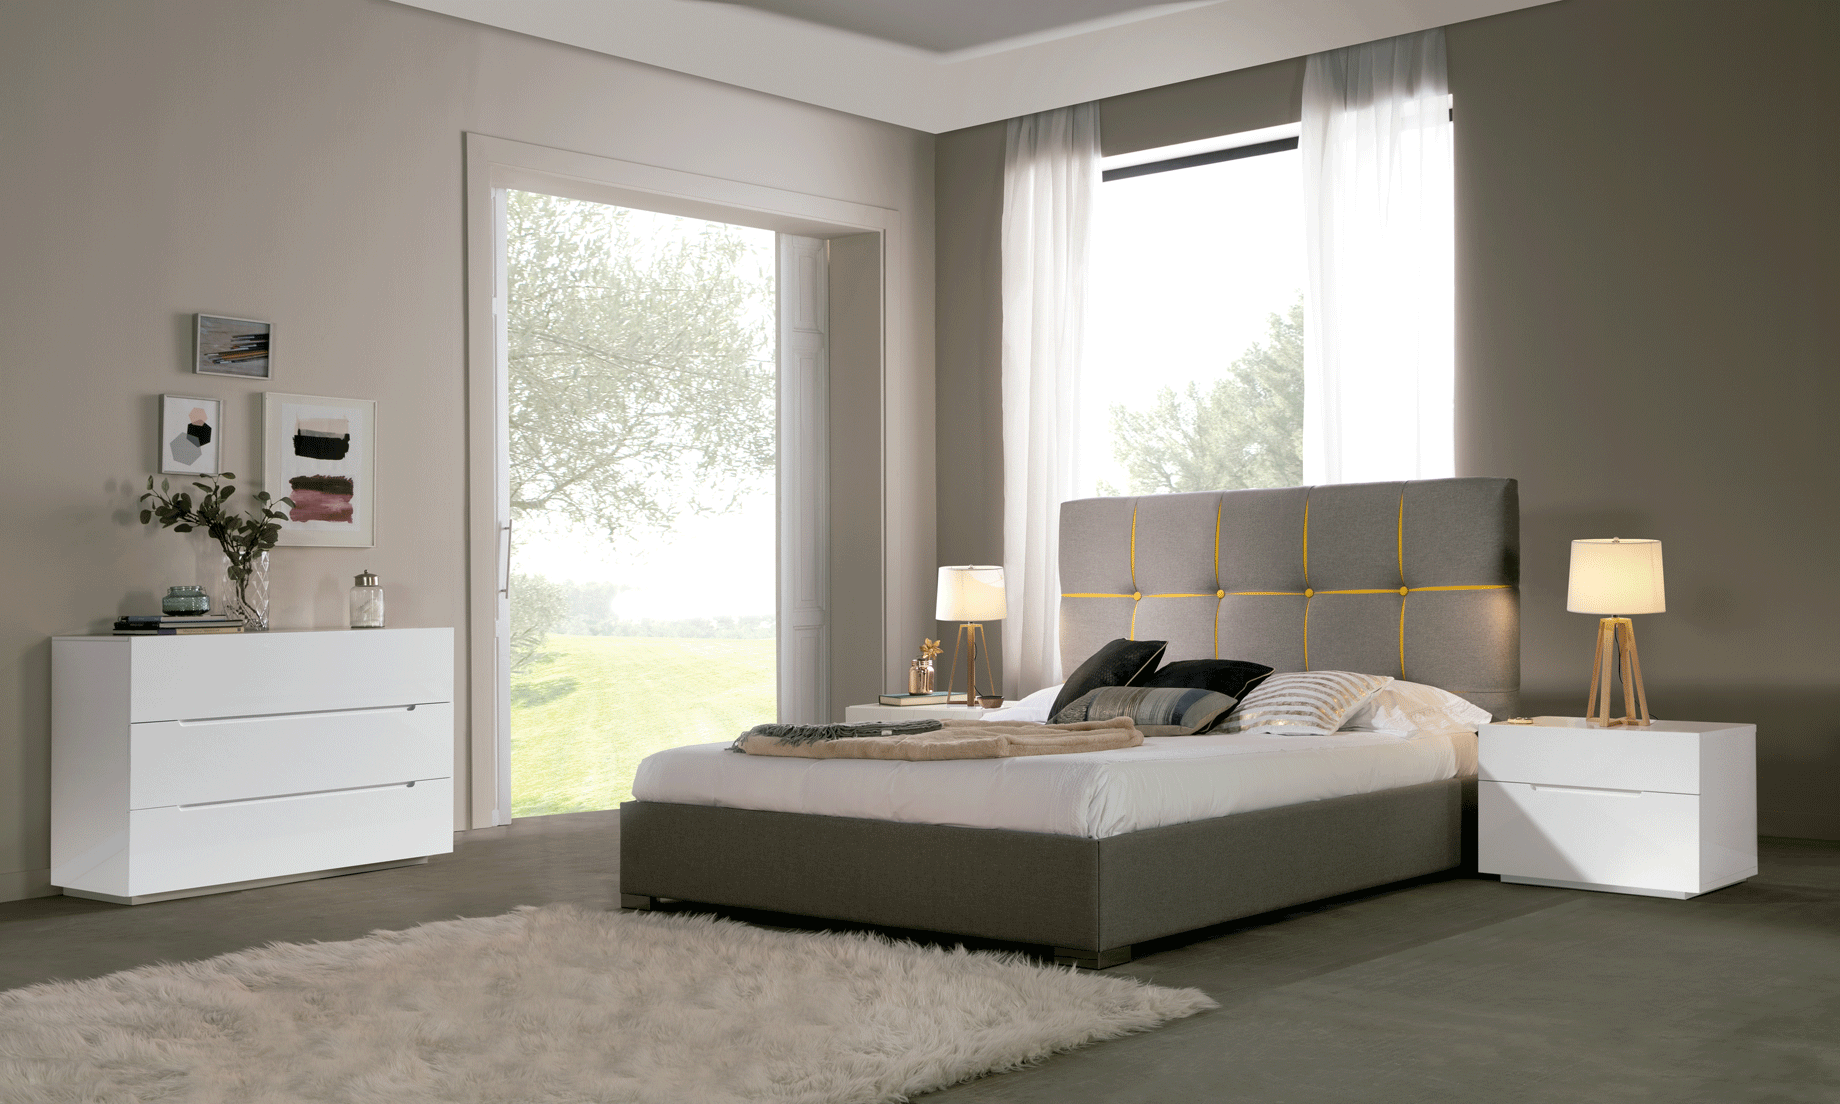 Bedroom Furniture Nightstands Veronica Bedroom with Storage, M100, C100, E100